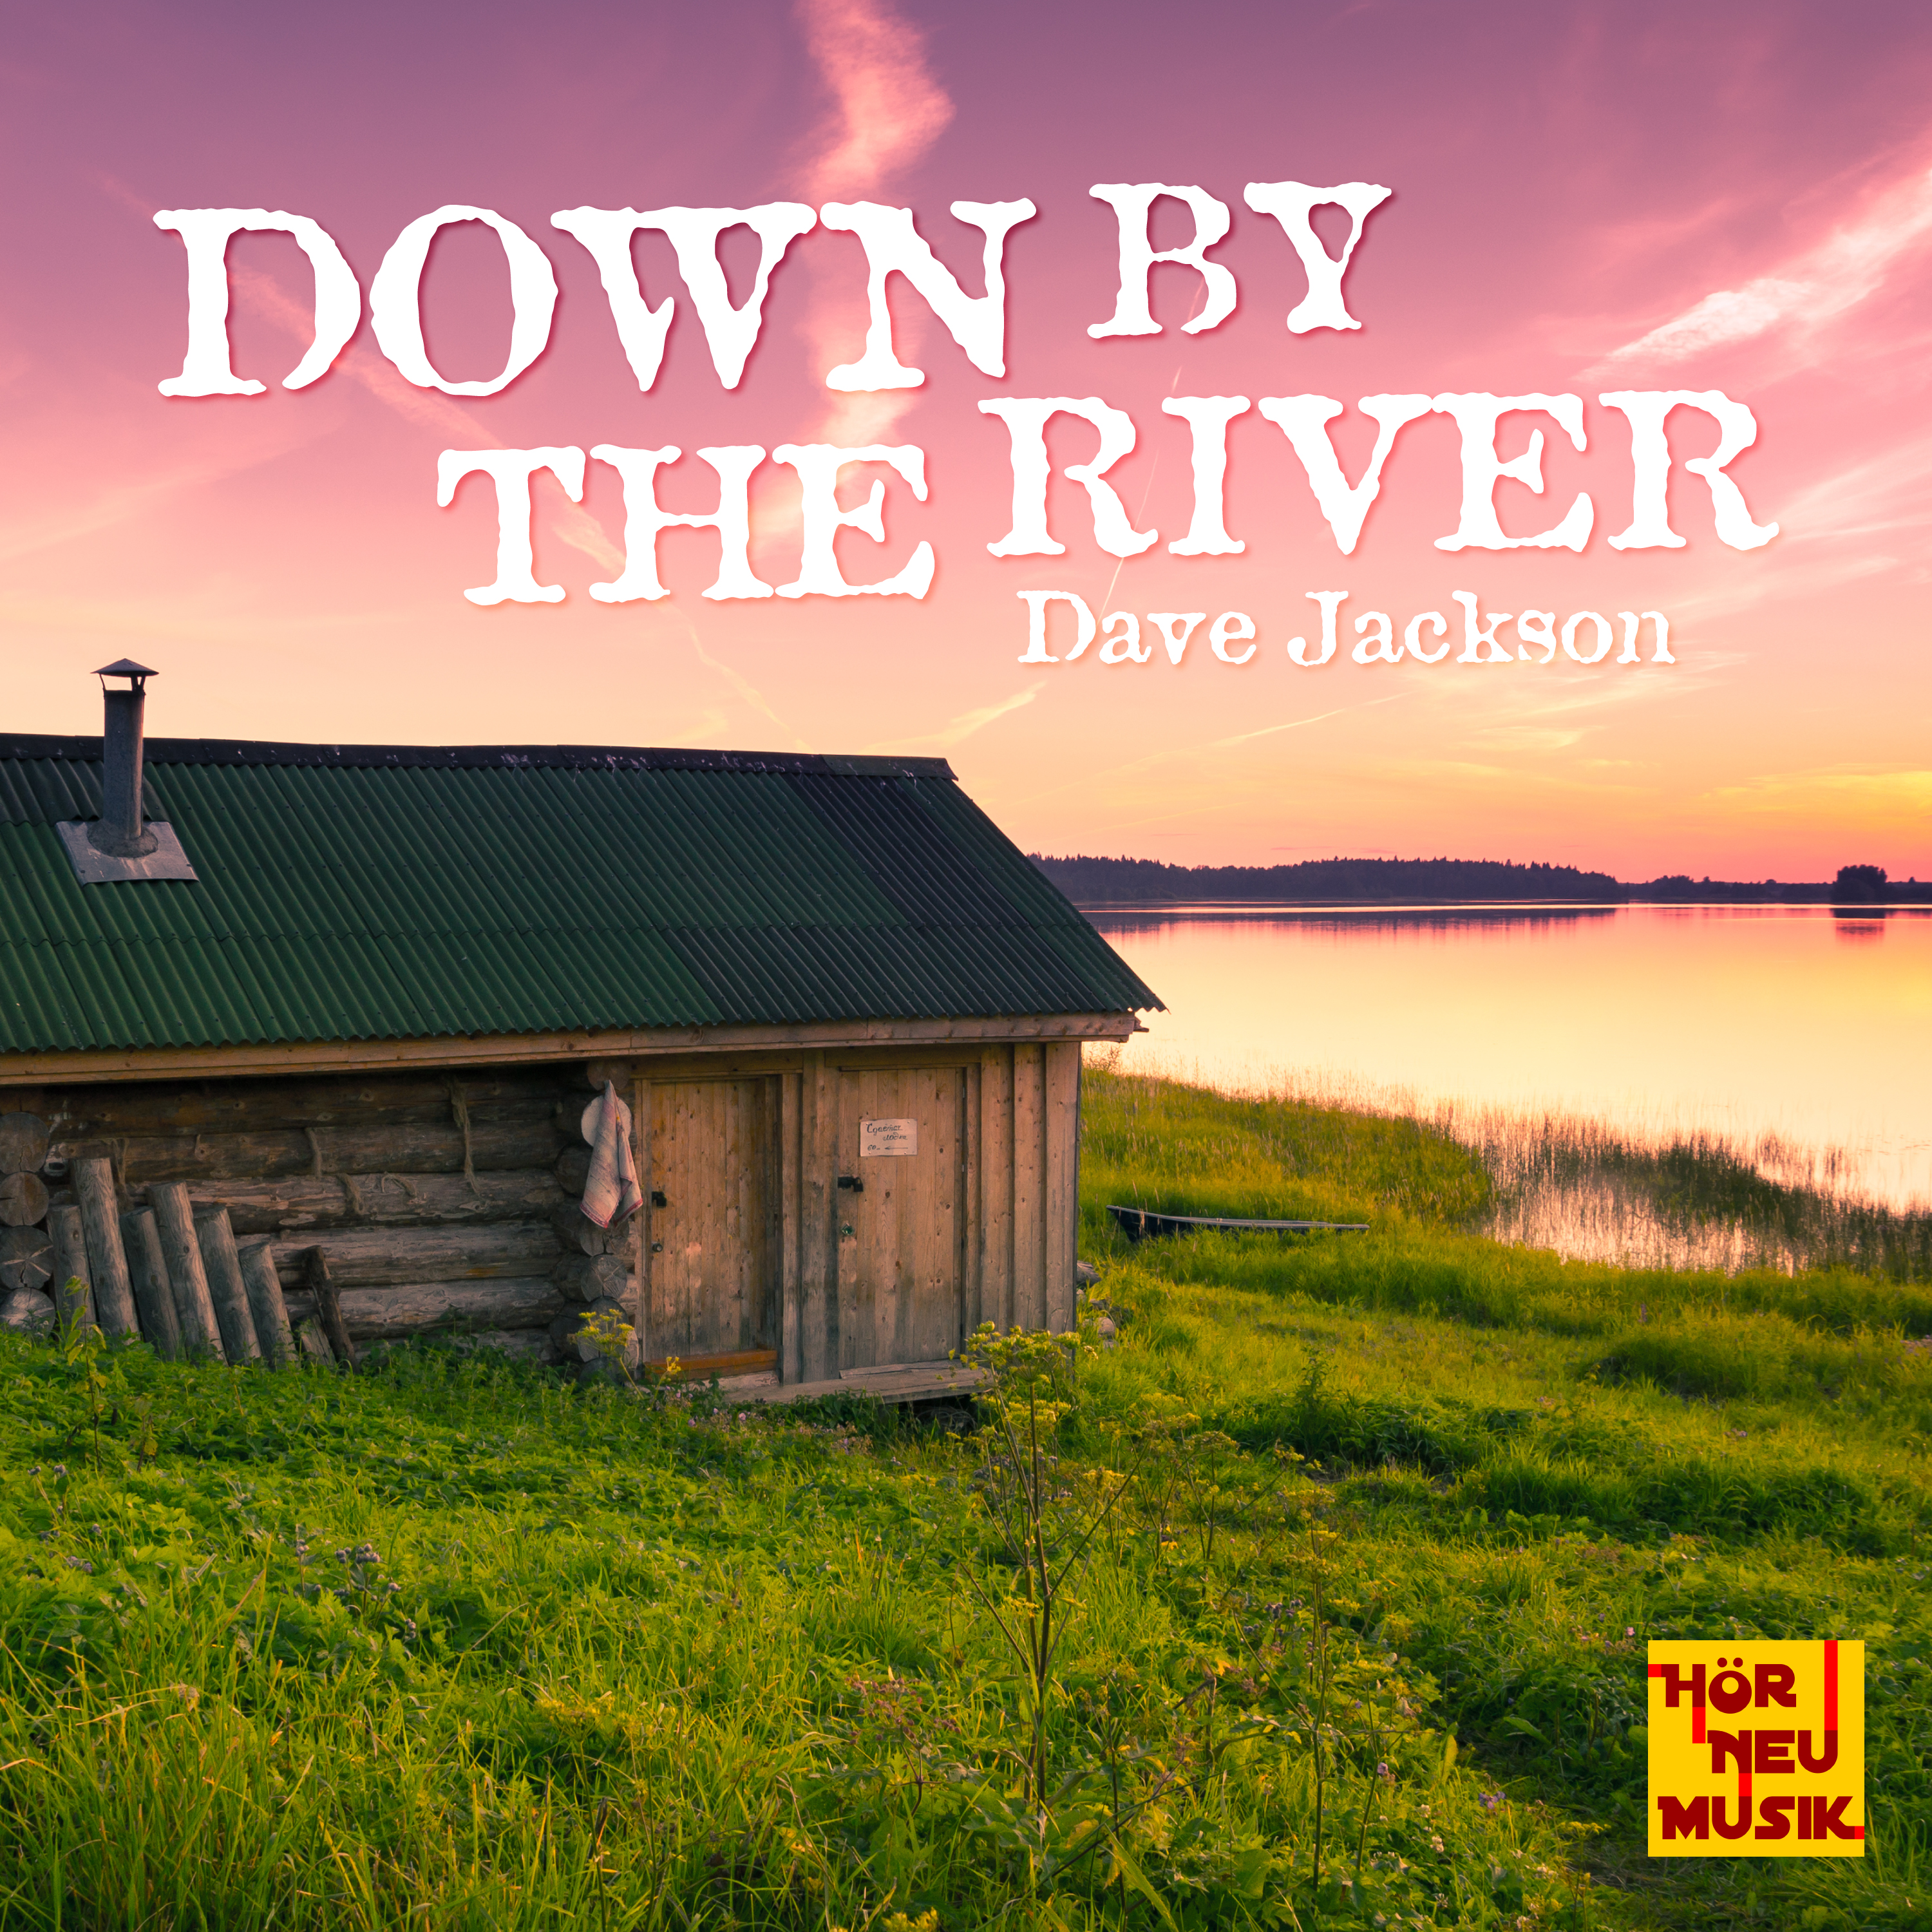 Dave Jackson - Blue grass of home